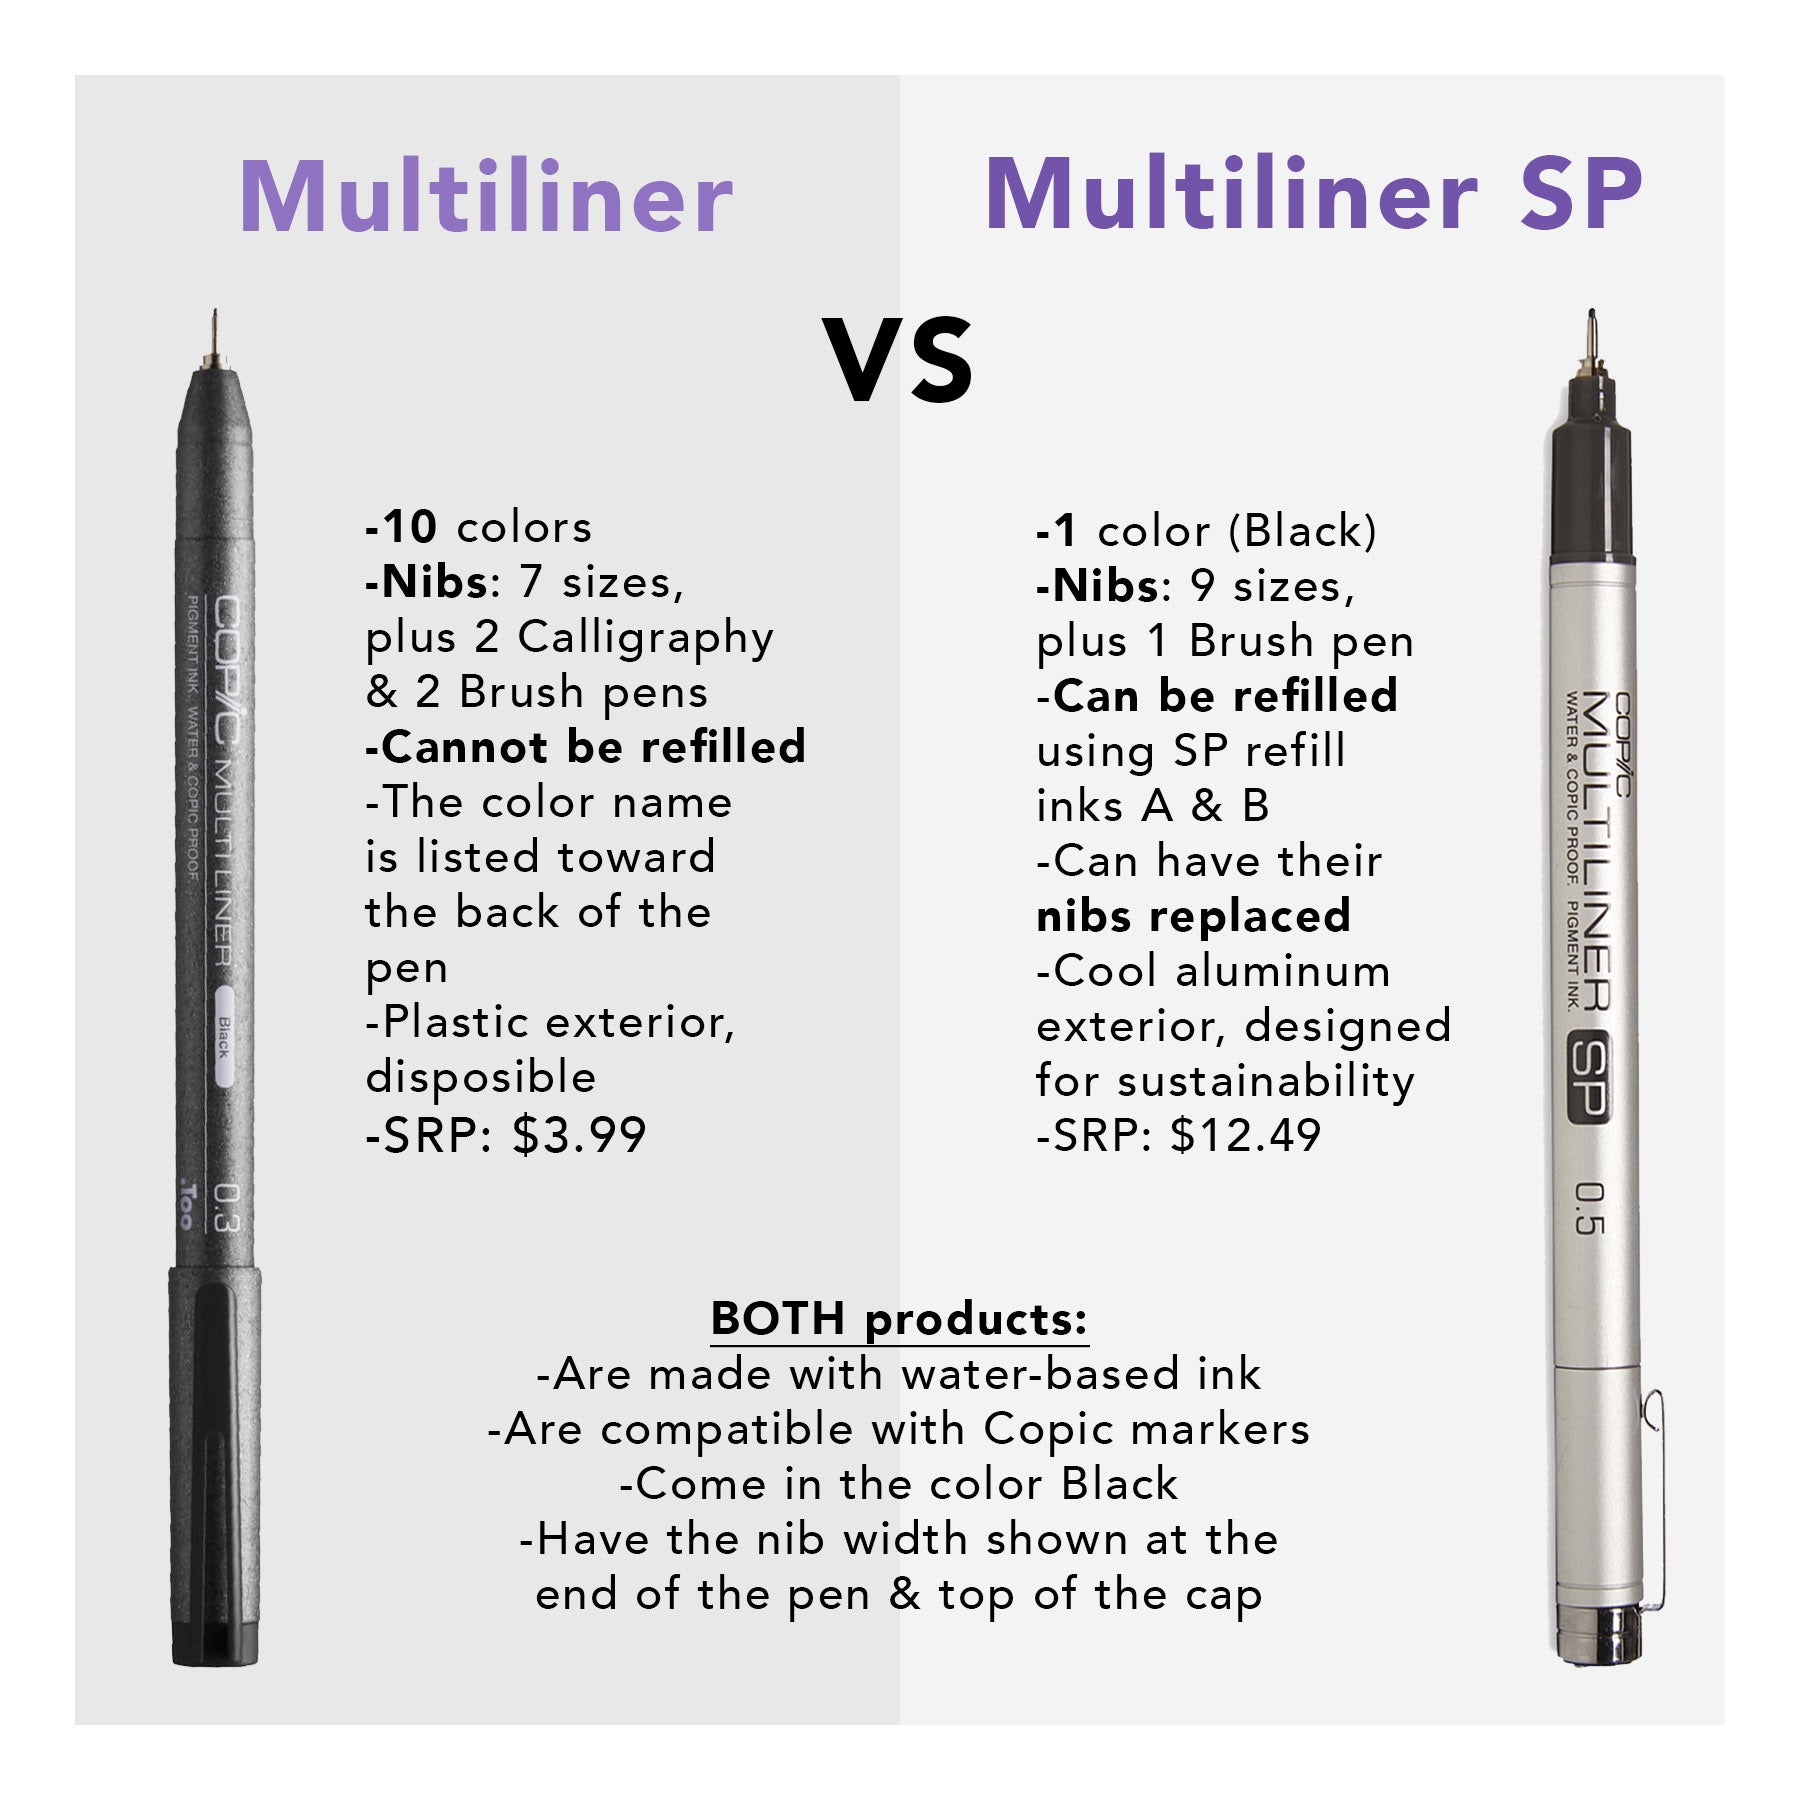 Tegenwerken Oceaan Inconsistent Mutliliner vs Multiliner SP